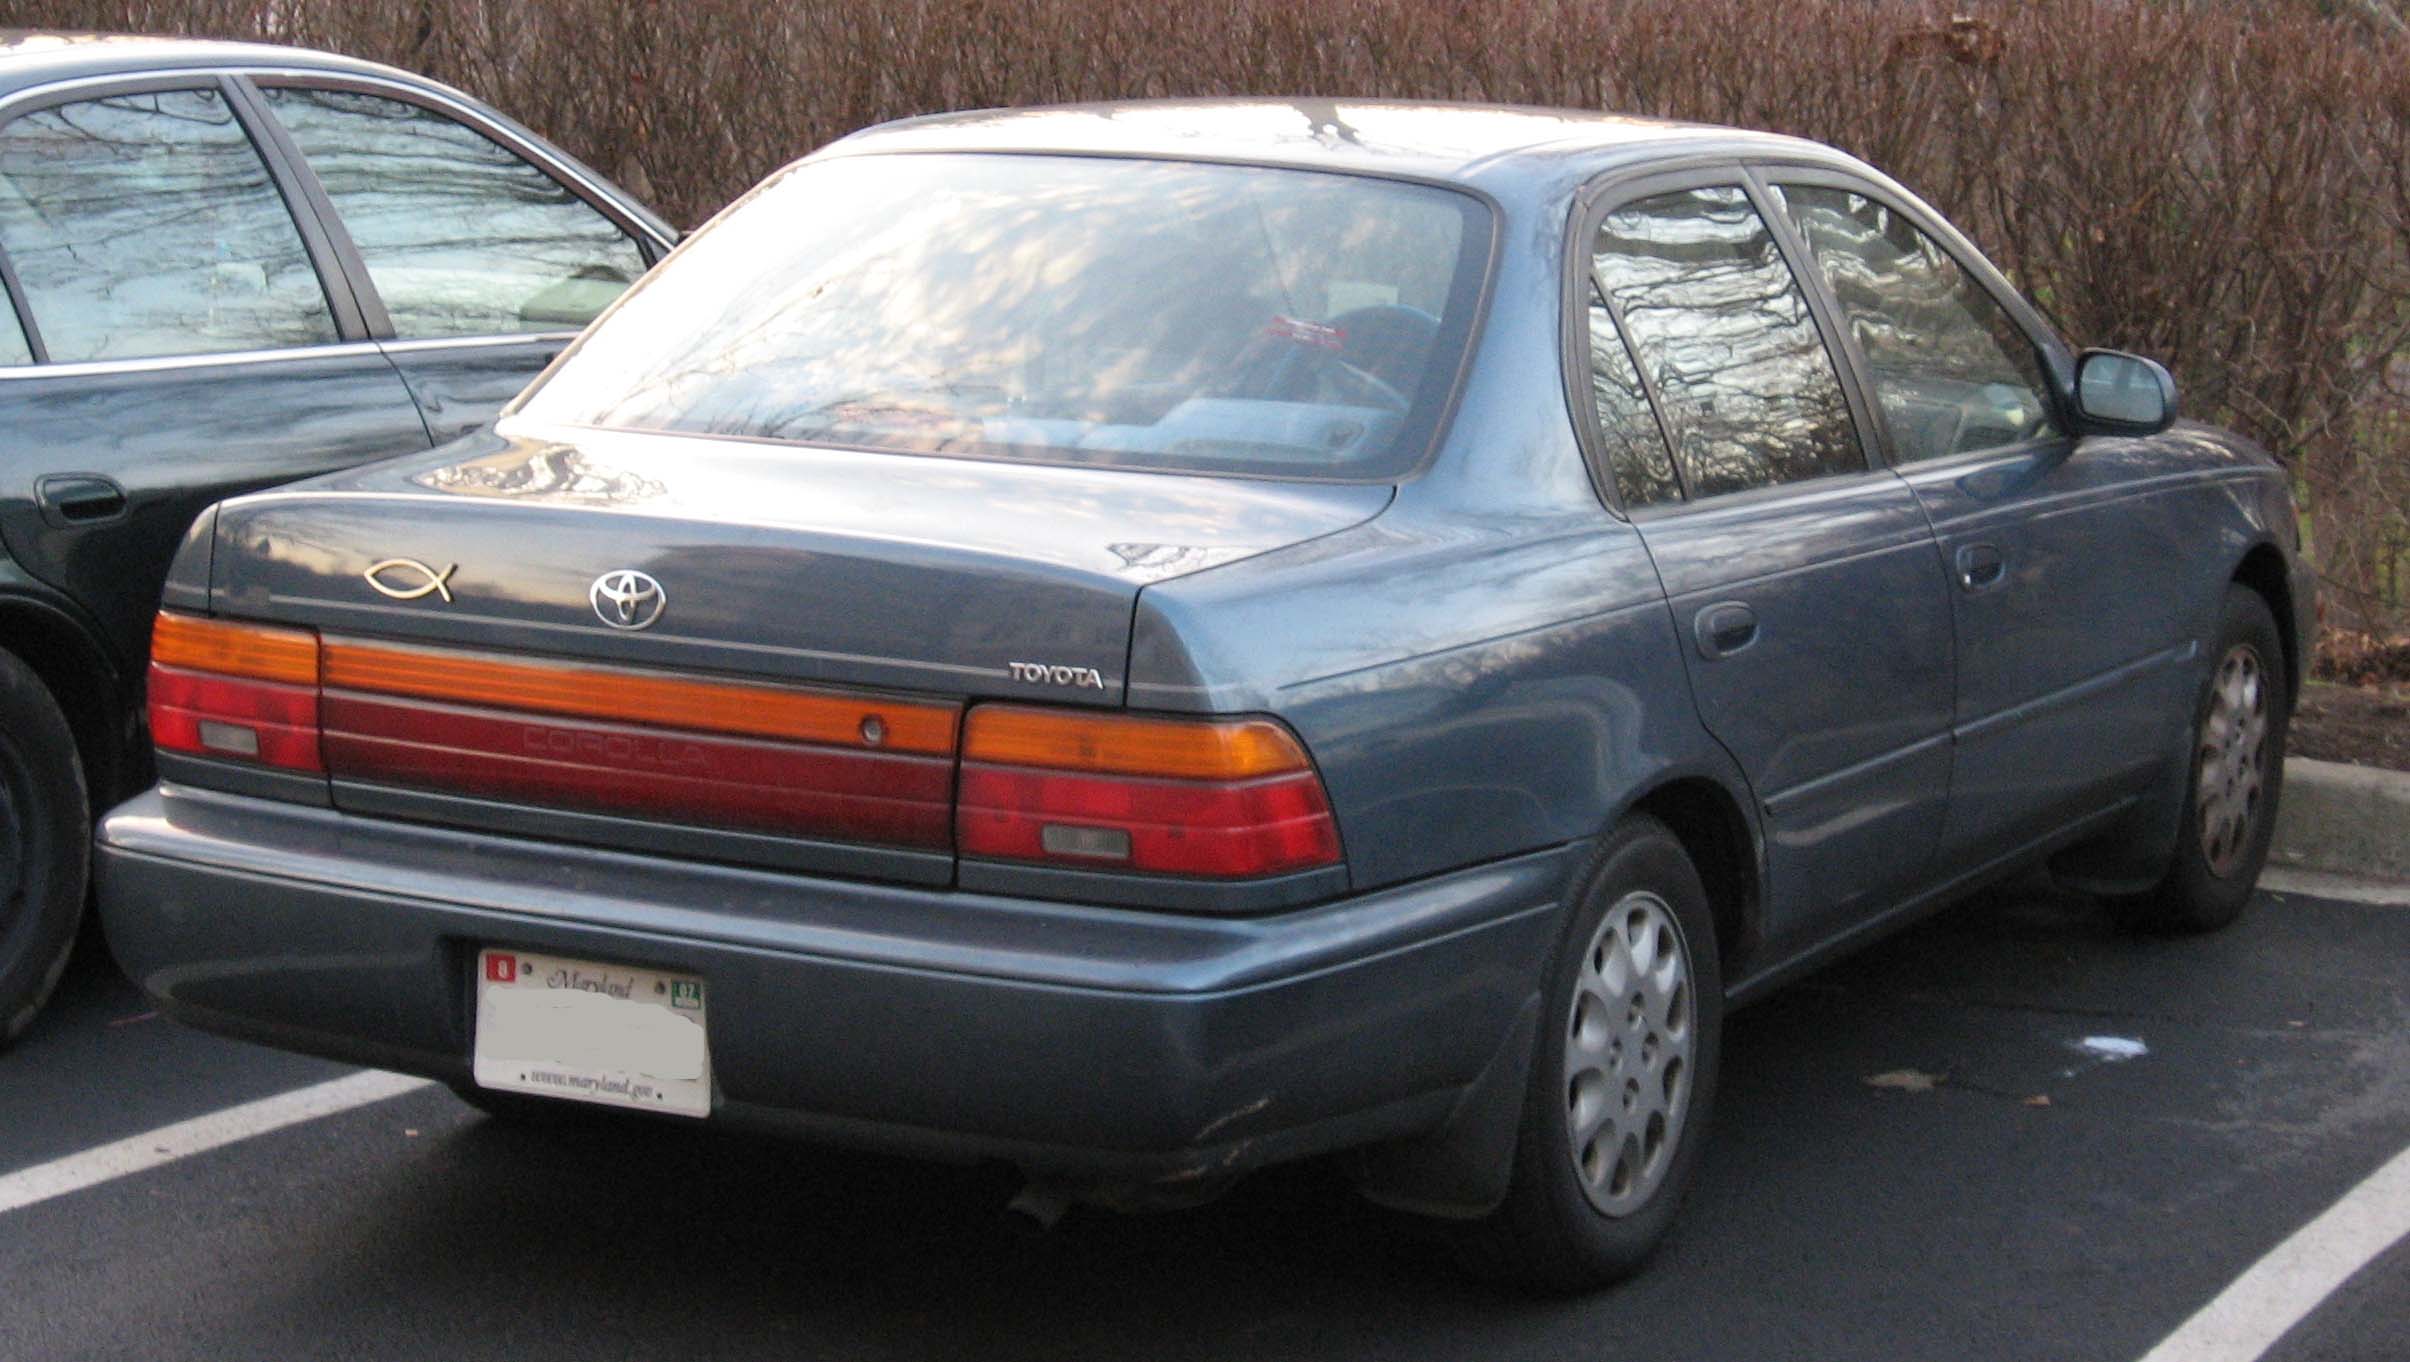 Королла 95 года. Toyota Corolla 1993-95. Тойота Королла 95 года. Toyota Corolla 1995. Тойота Королла 93.